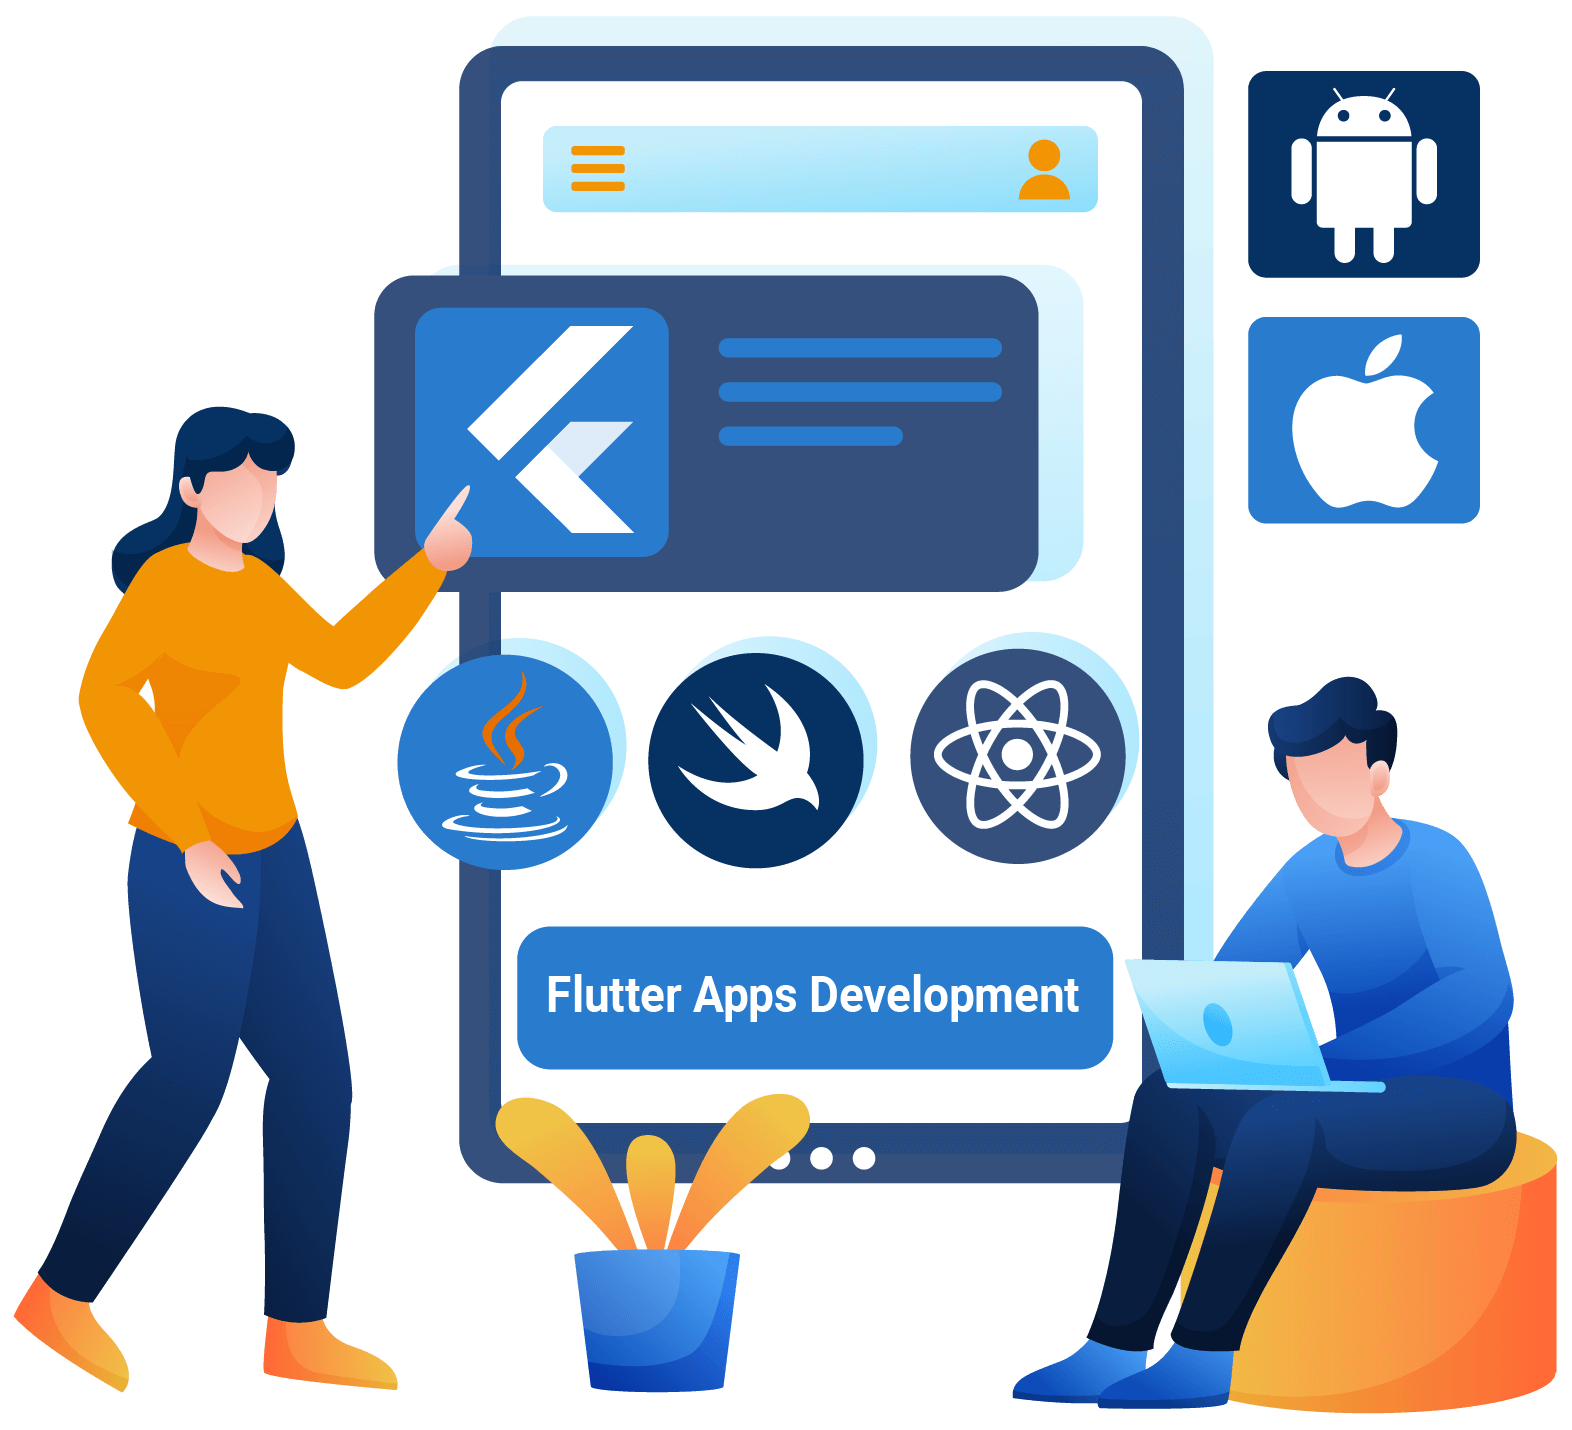 Flutter Apps Development